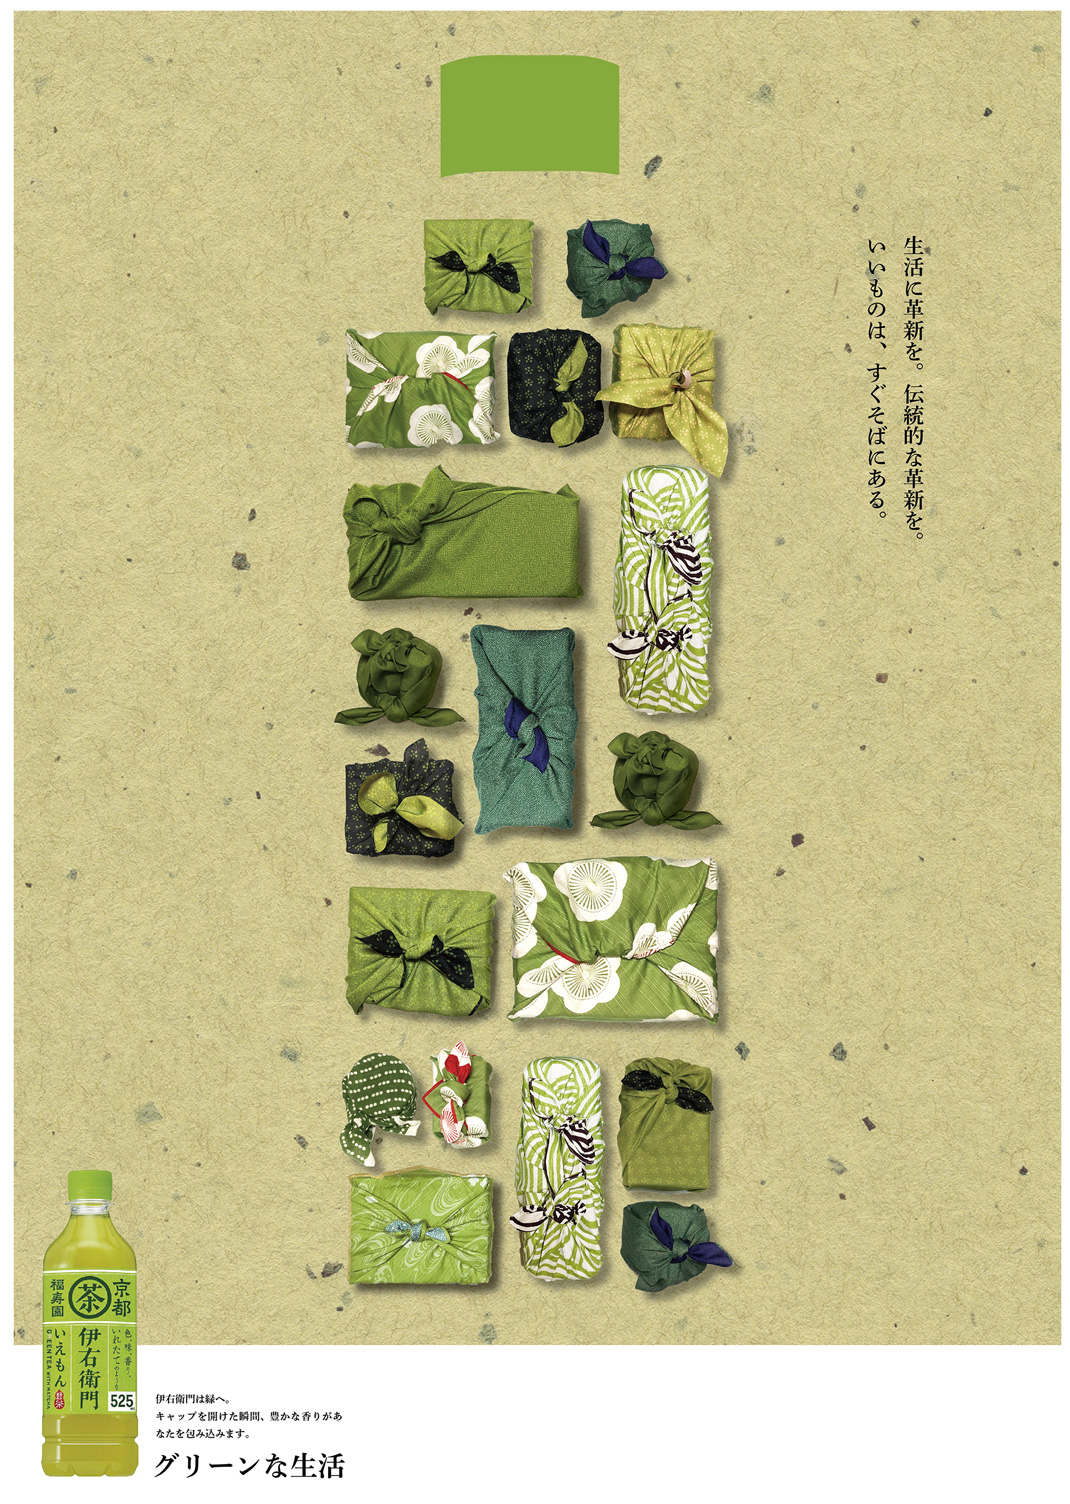 茶饮品广告设计 日本 茶饮 饮品 包装设计 海报设计 广告设计 logo设计 vi设计 空间设计